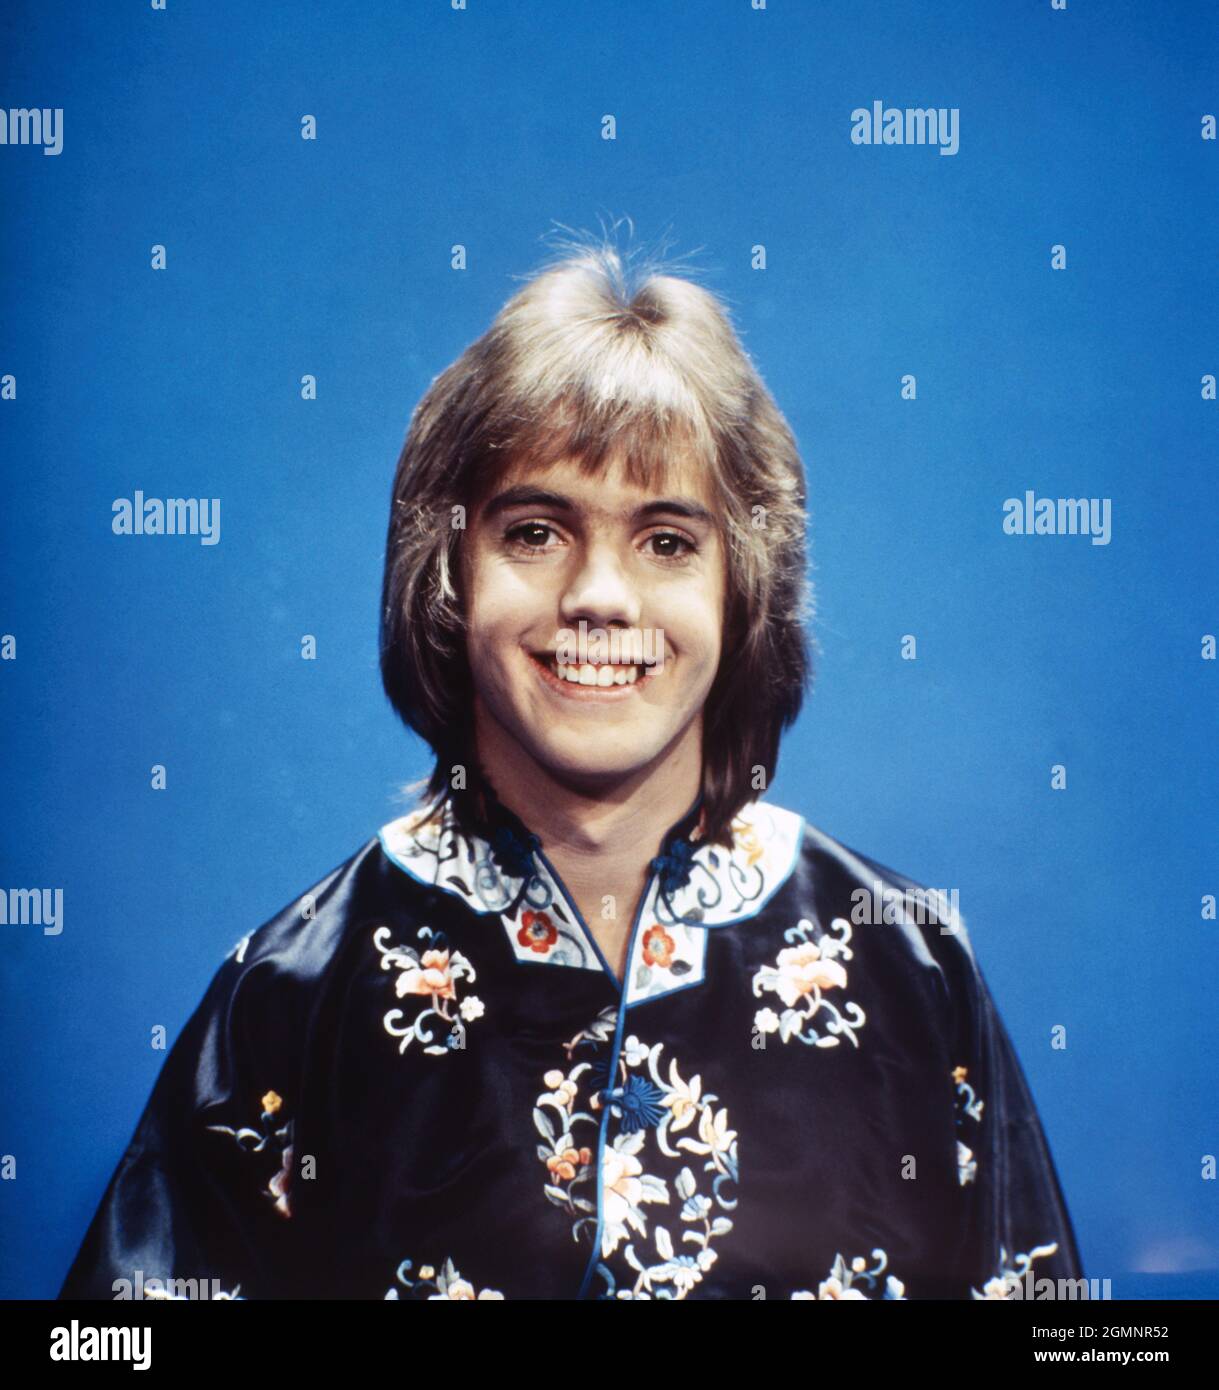 Shaun Cassidy, amerikanischer Popsänger und Schauspieler, Deutschland um 1977. American pop singer and actor Shaun Cassidy, Germany around 1977. Stock Photo